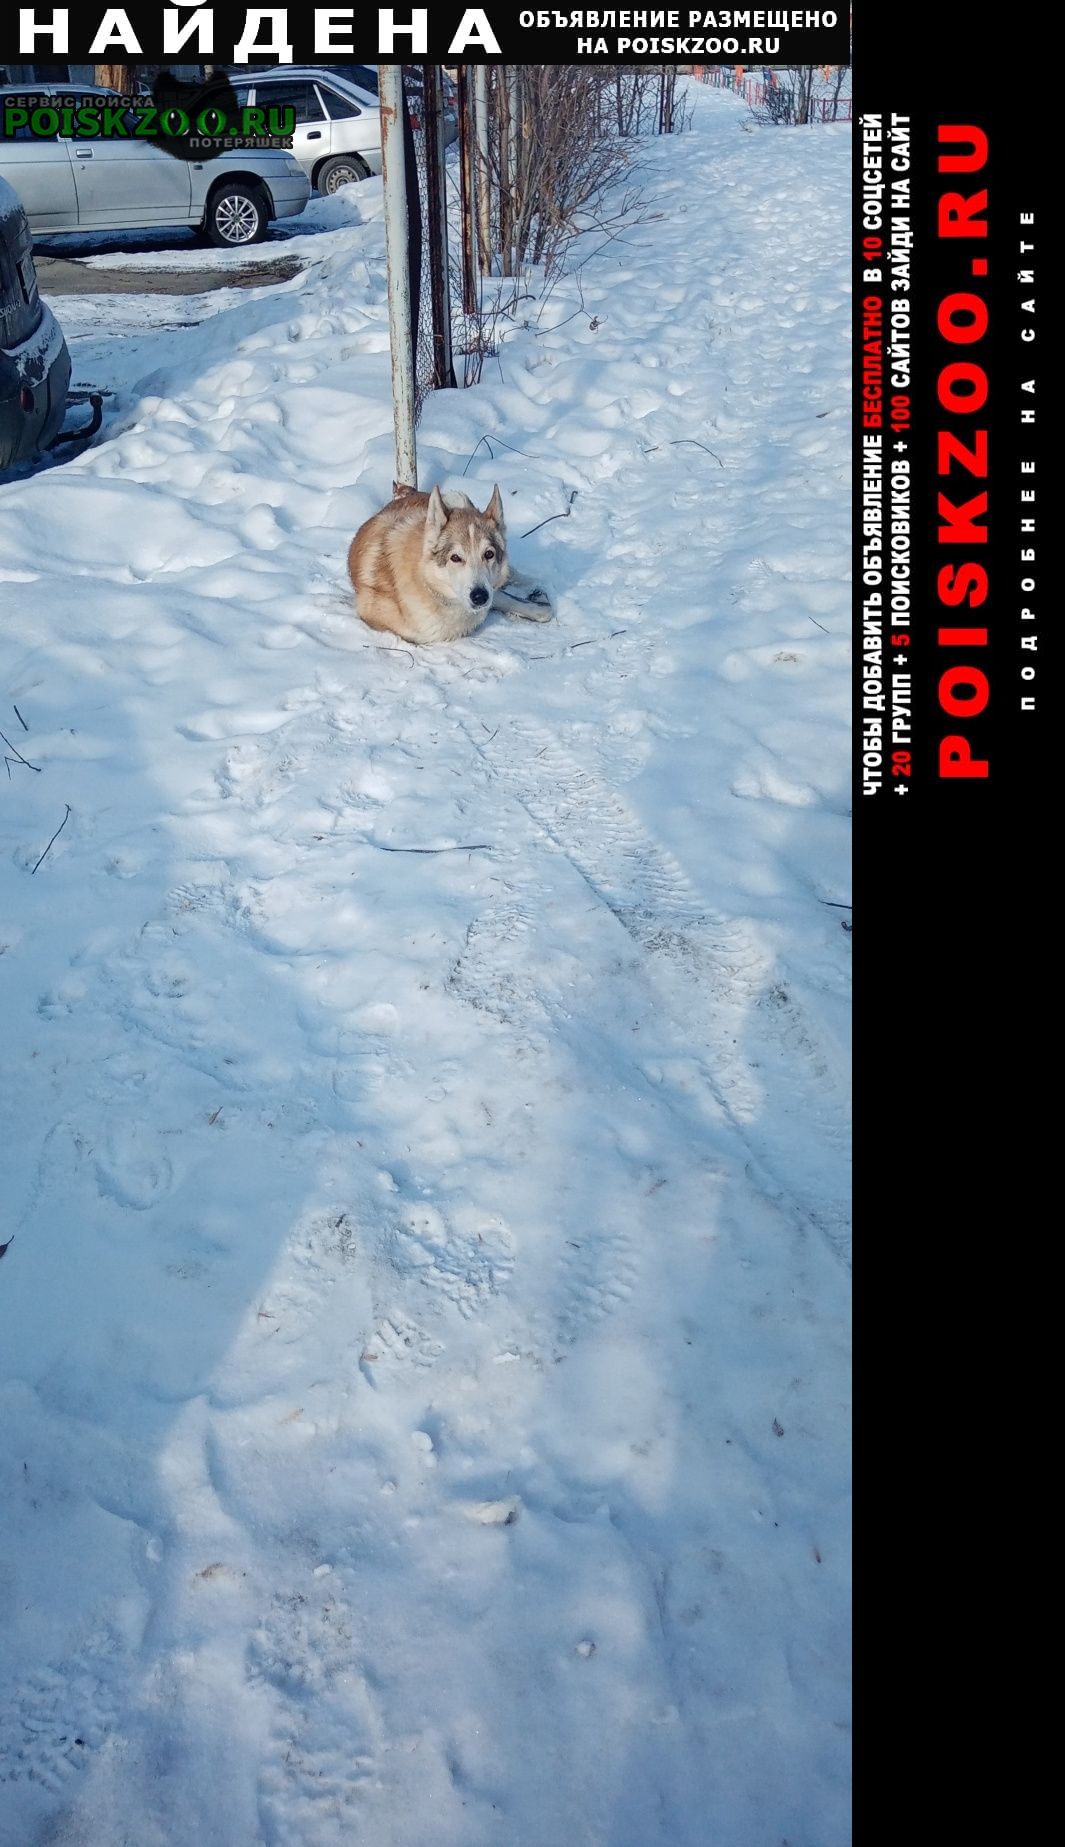 Челябинск Найдена собака бегает комсомольский проспект 42, 44, 46